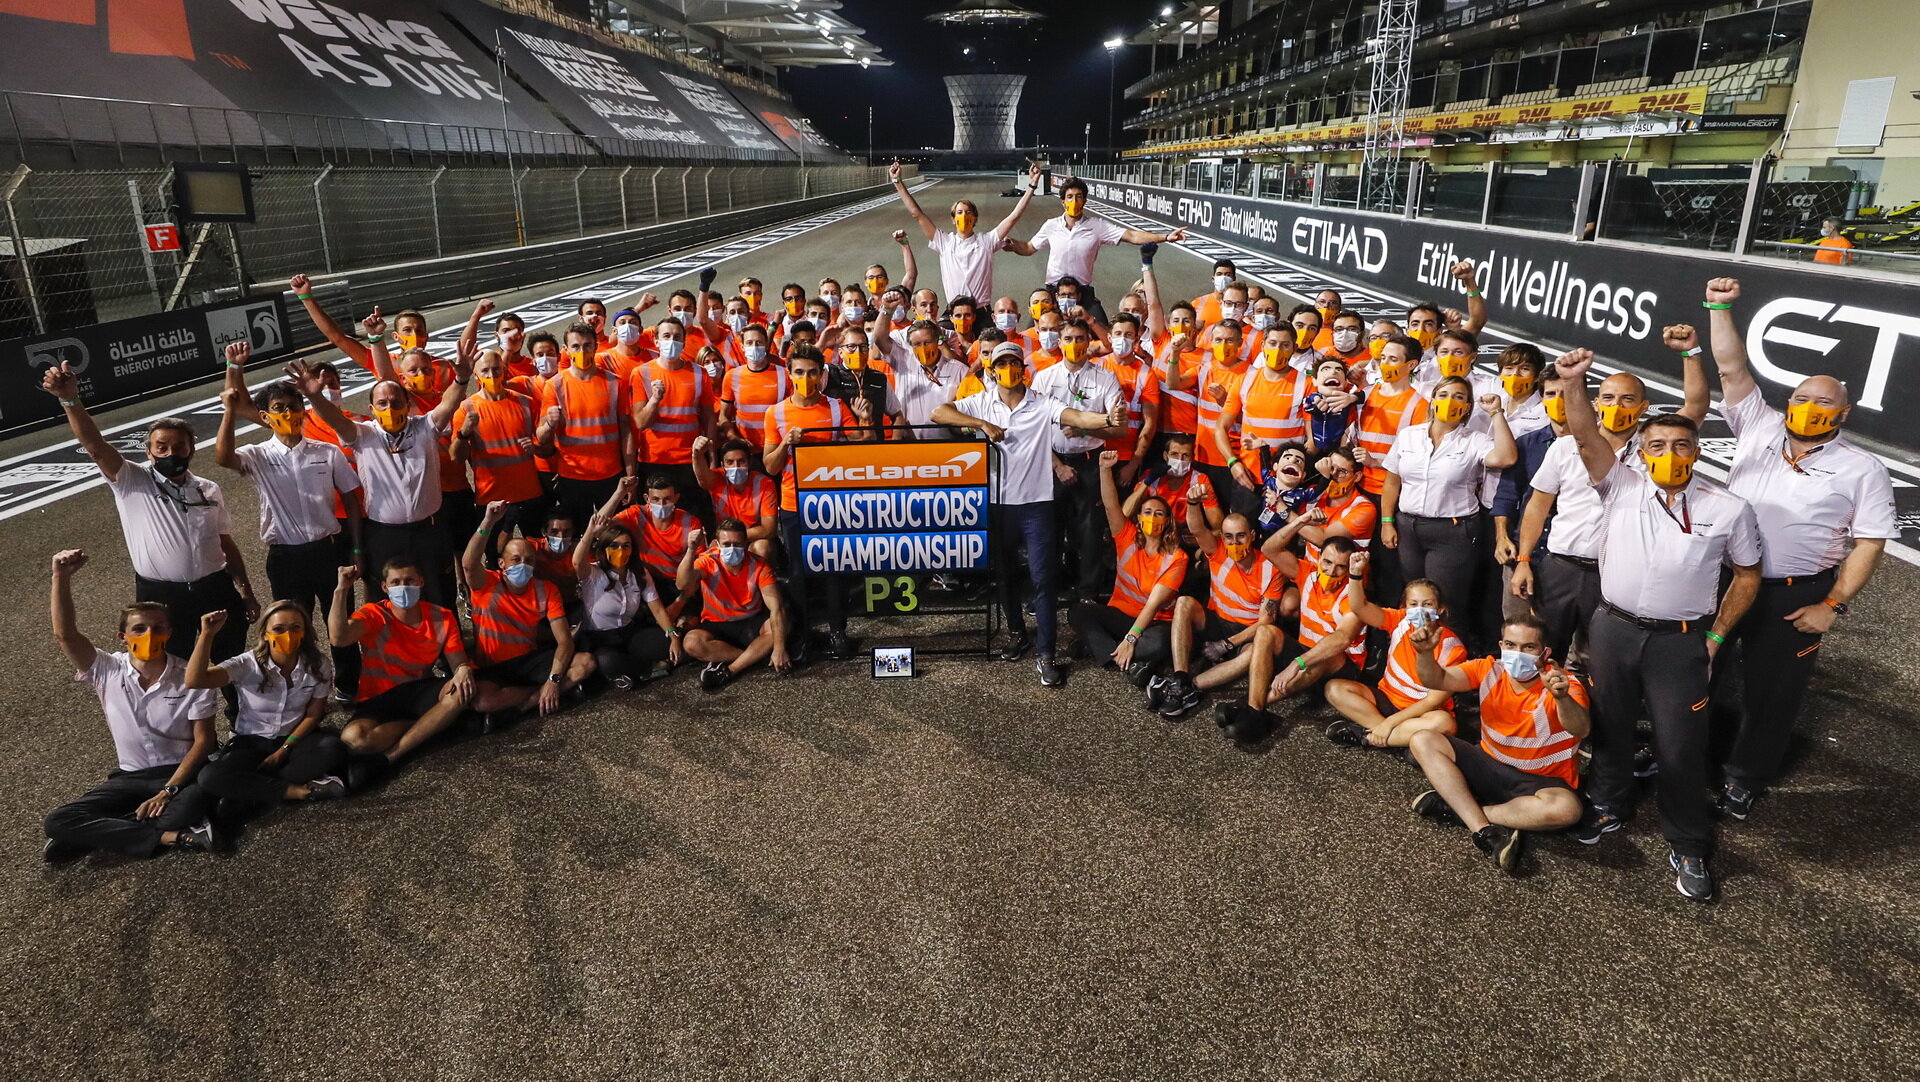 Tým McLaren po úspěšné sezóně v Abú Zabí